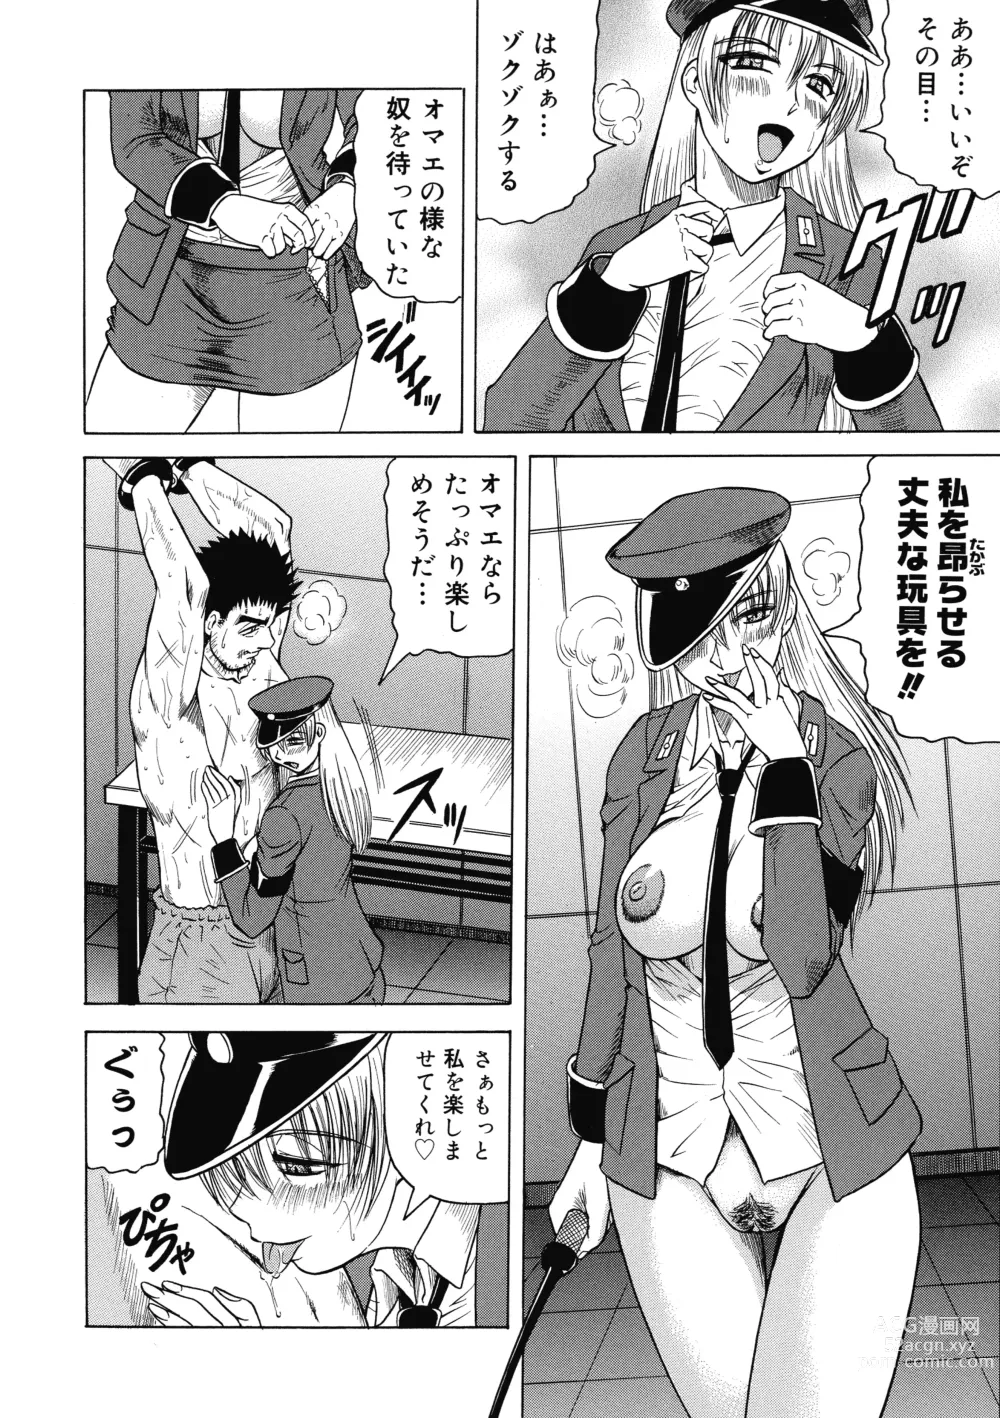 Page 152 of manga Ichigeki Nousatsu Satsuki-sensei